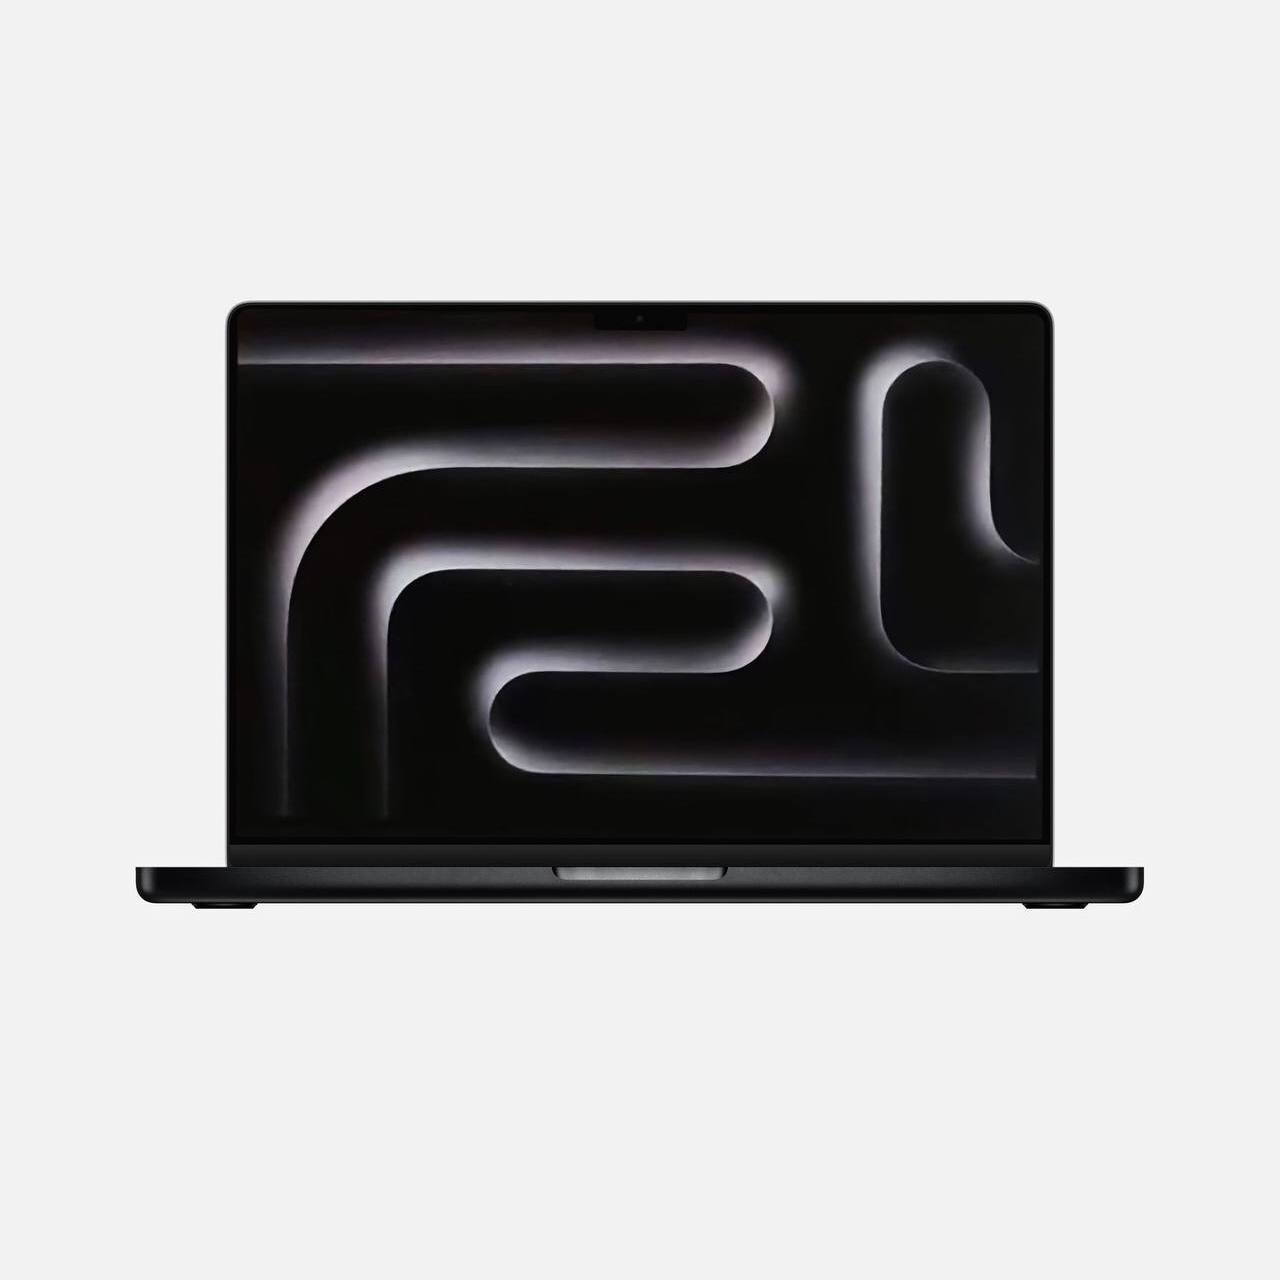 Концепт MacBook Pro 14” в чёрном цвете, который может быть показан на ближайшей презентации